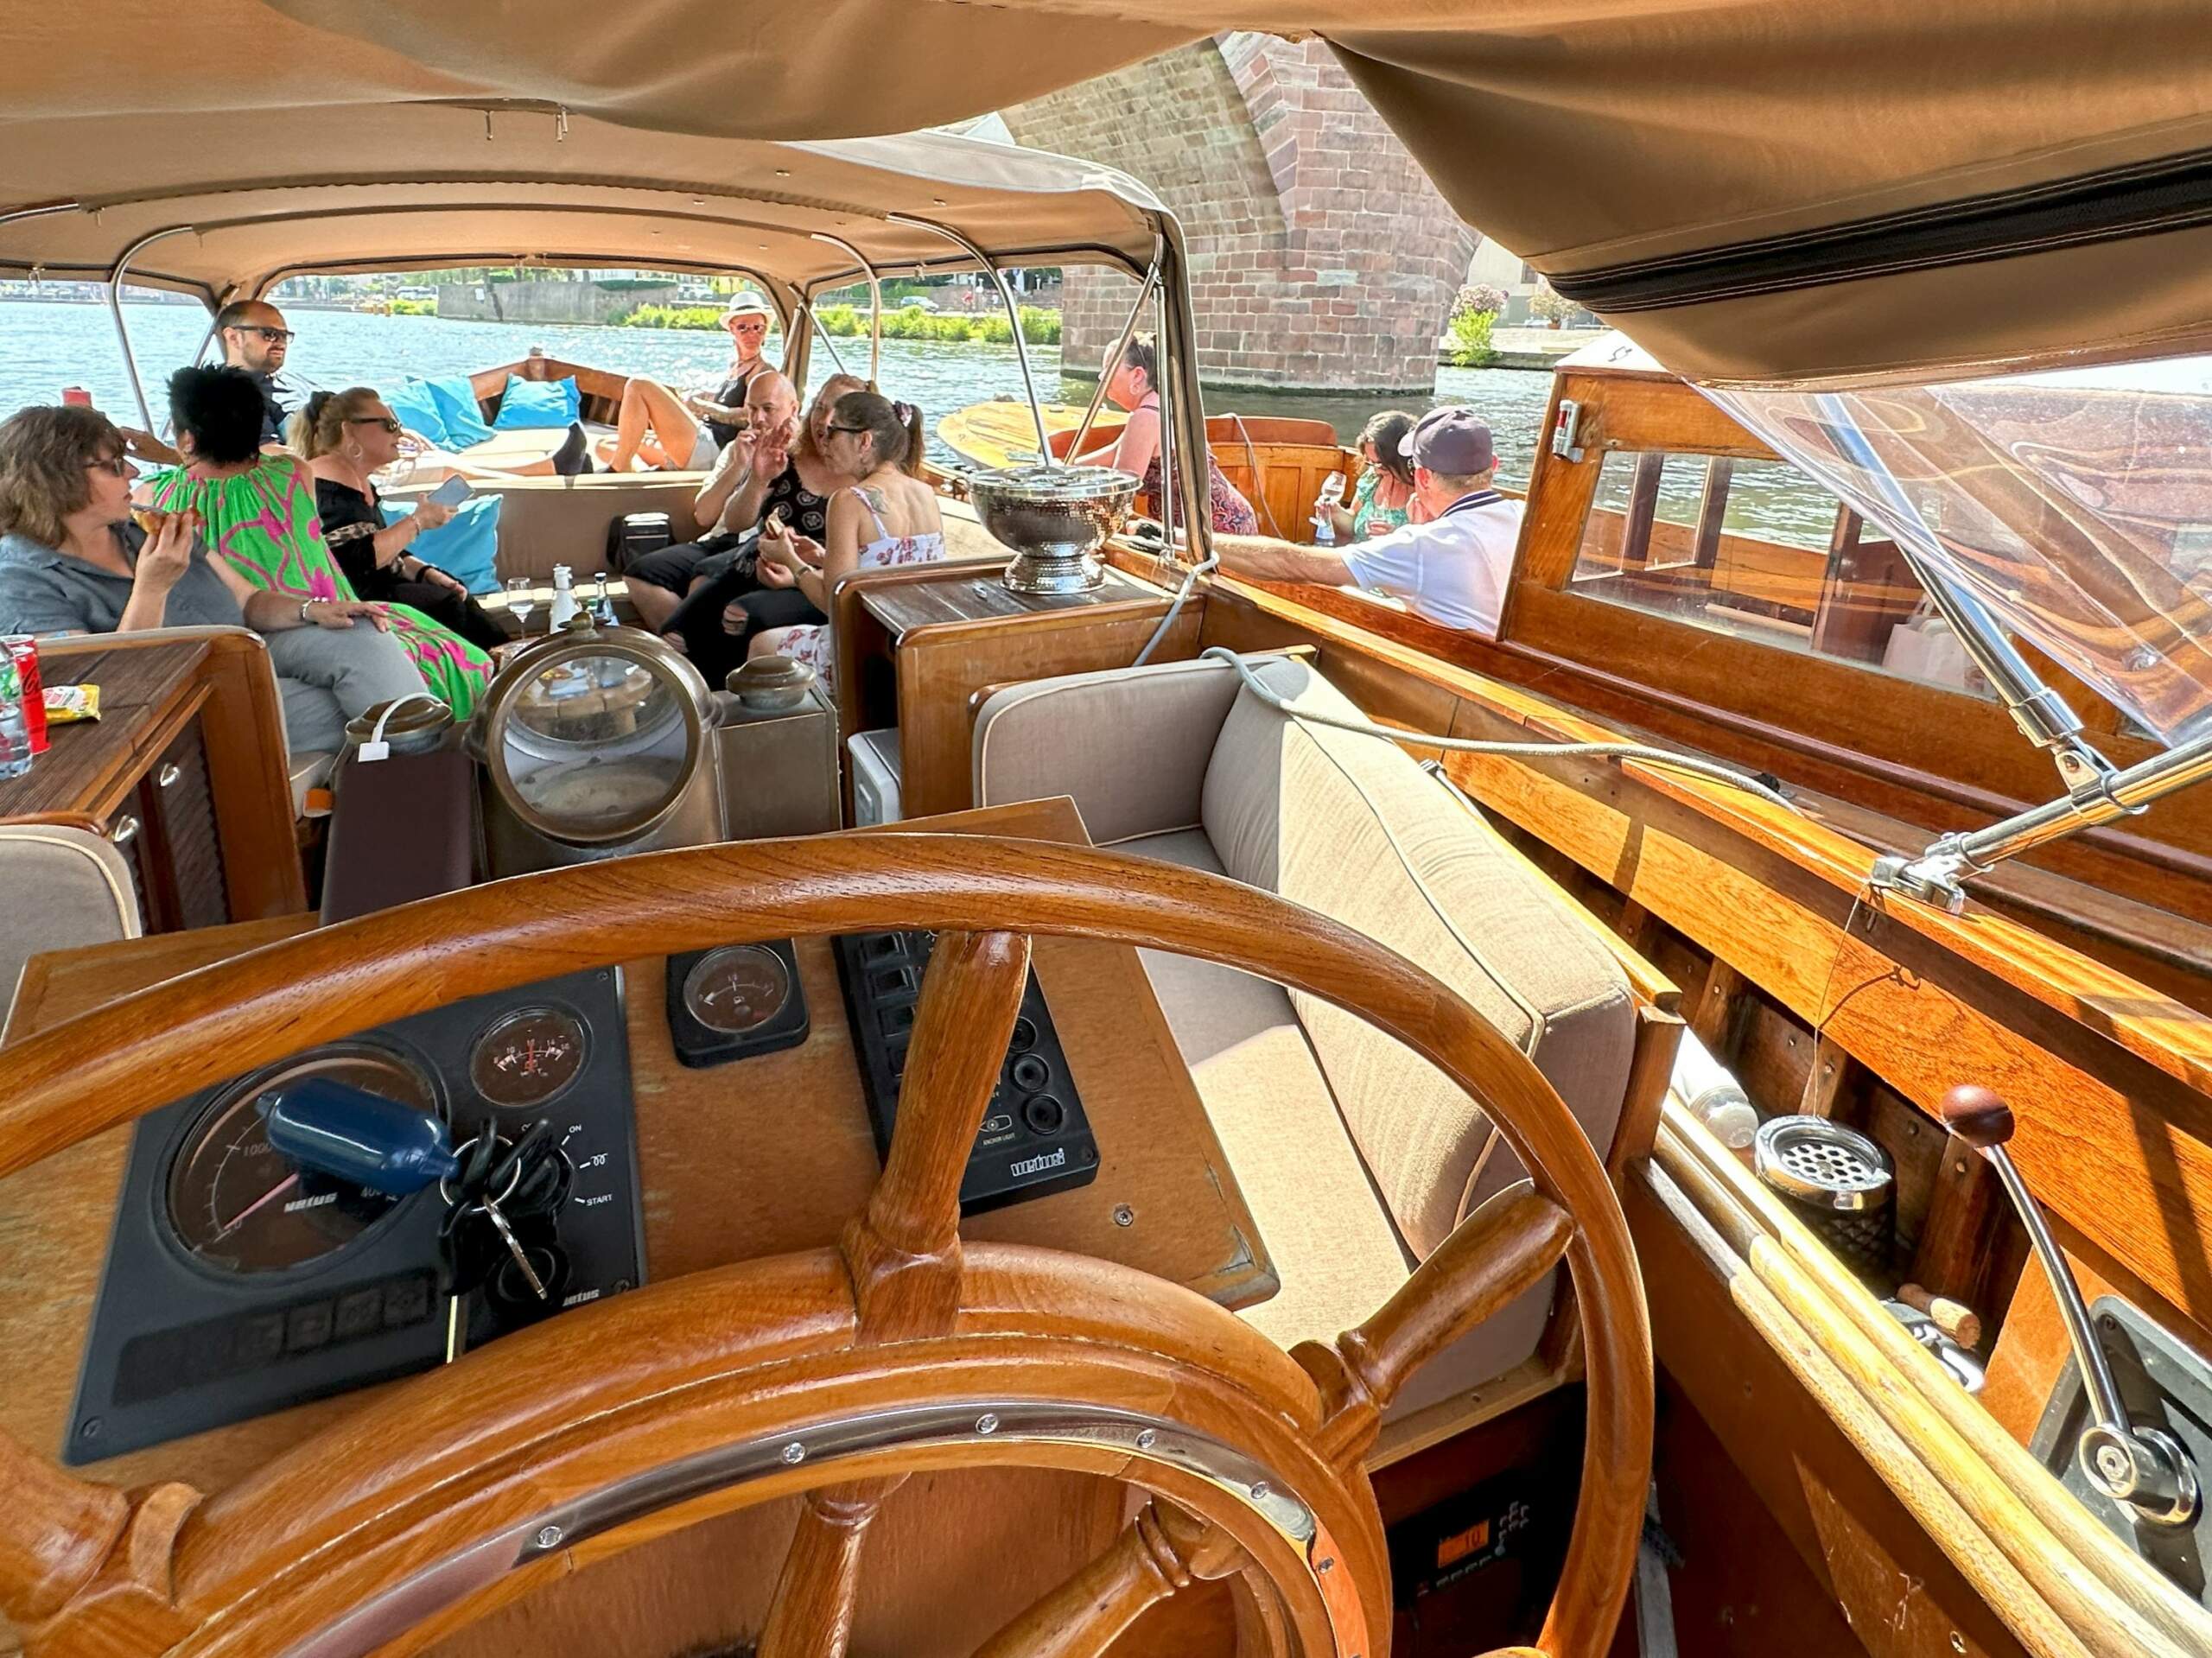 Eine Gruppe Touristen beim Sightseeing mit City Guide und Wein an Bord des Boots von Riverboat vom Steuerrad aus gesehen